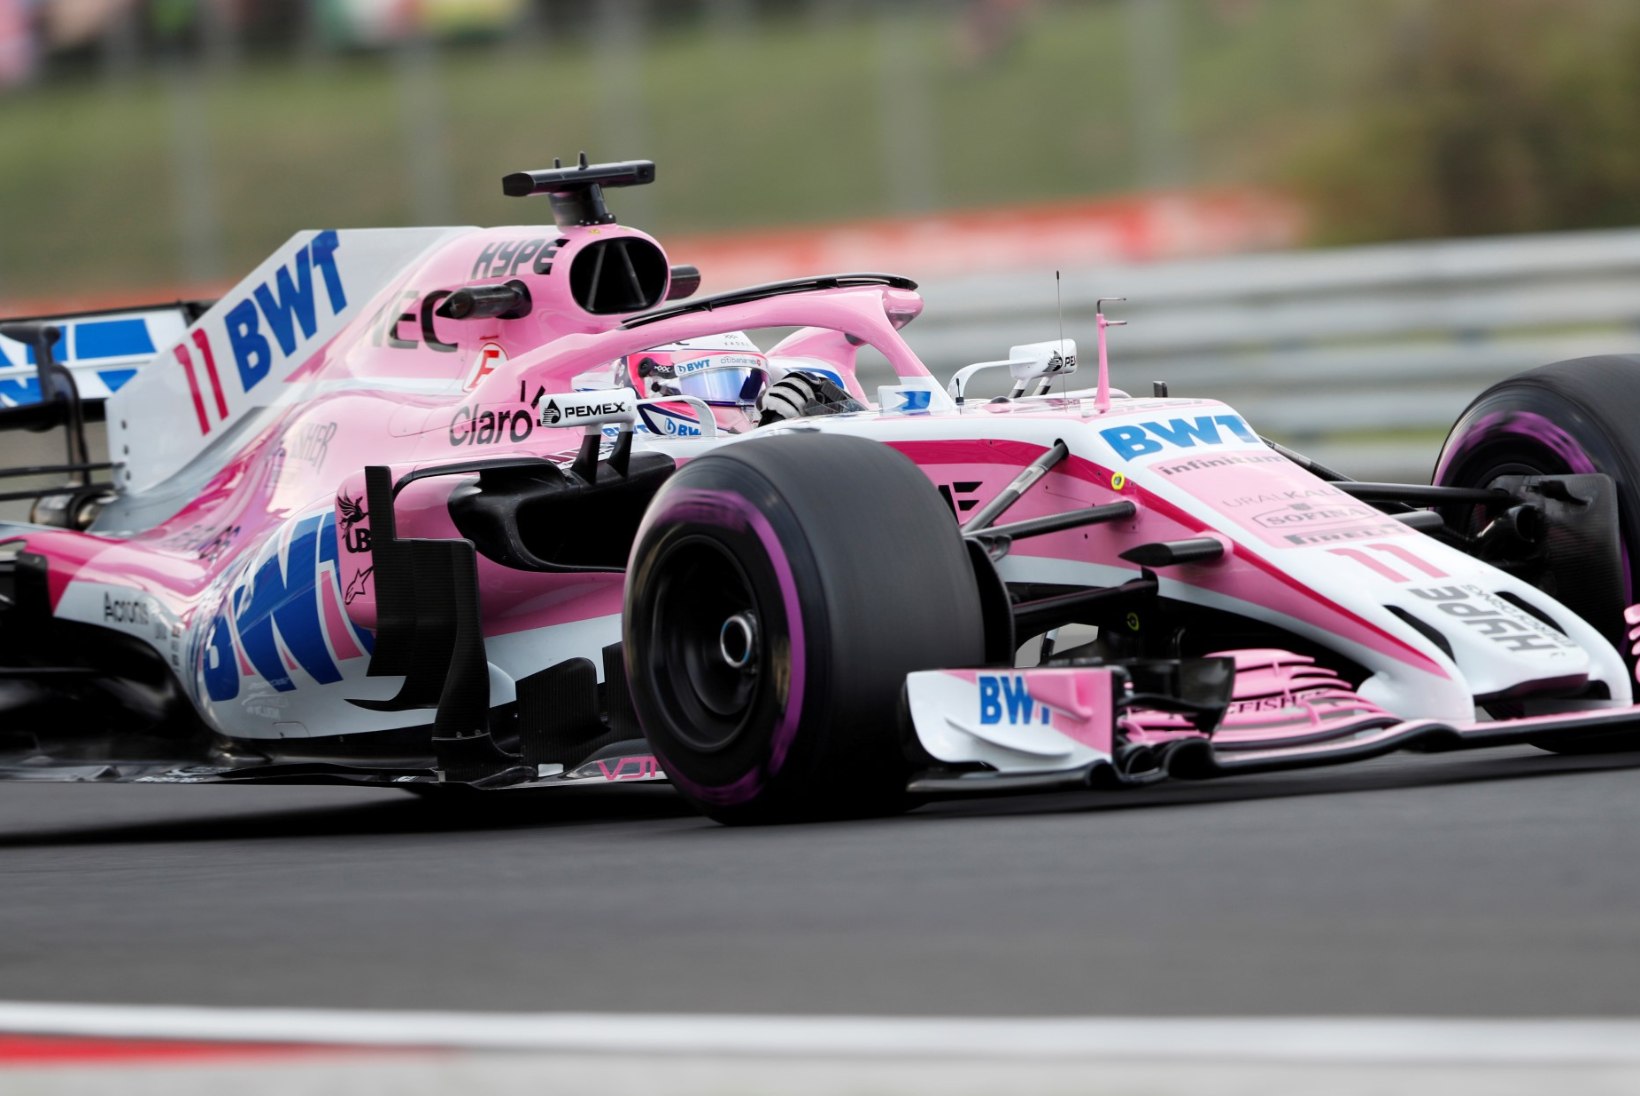 NII SEE JUHTUS | Sport 24.08: Force India vormel-1 tiimilt võetakse kõik punktid ära